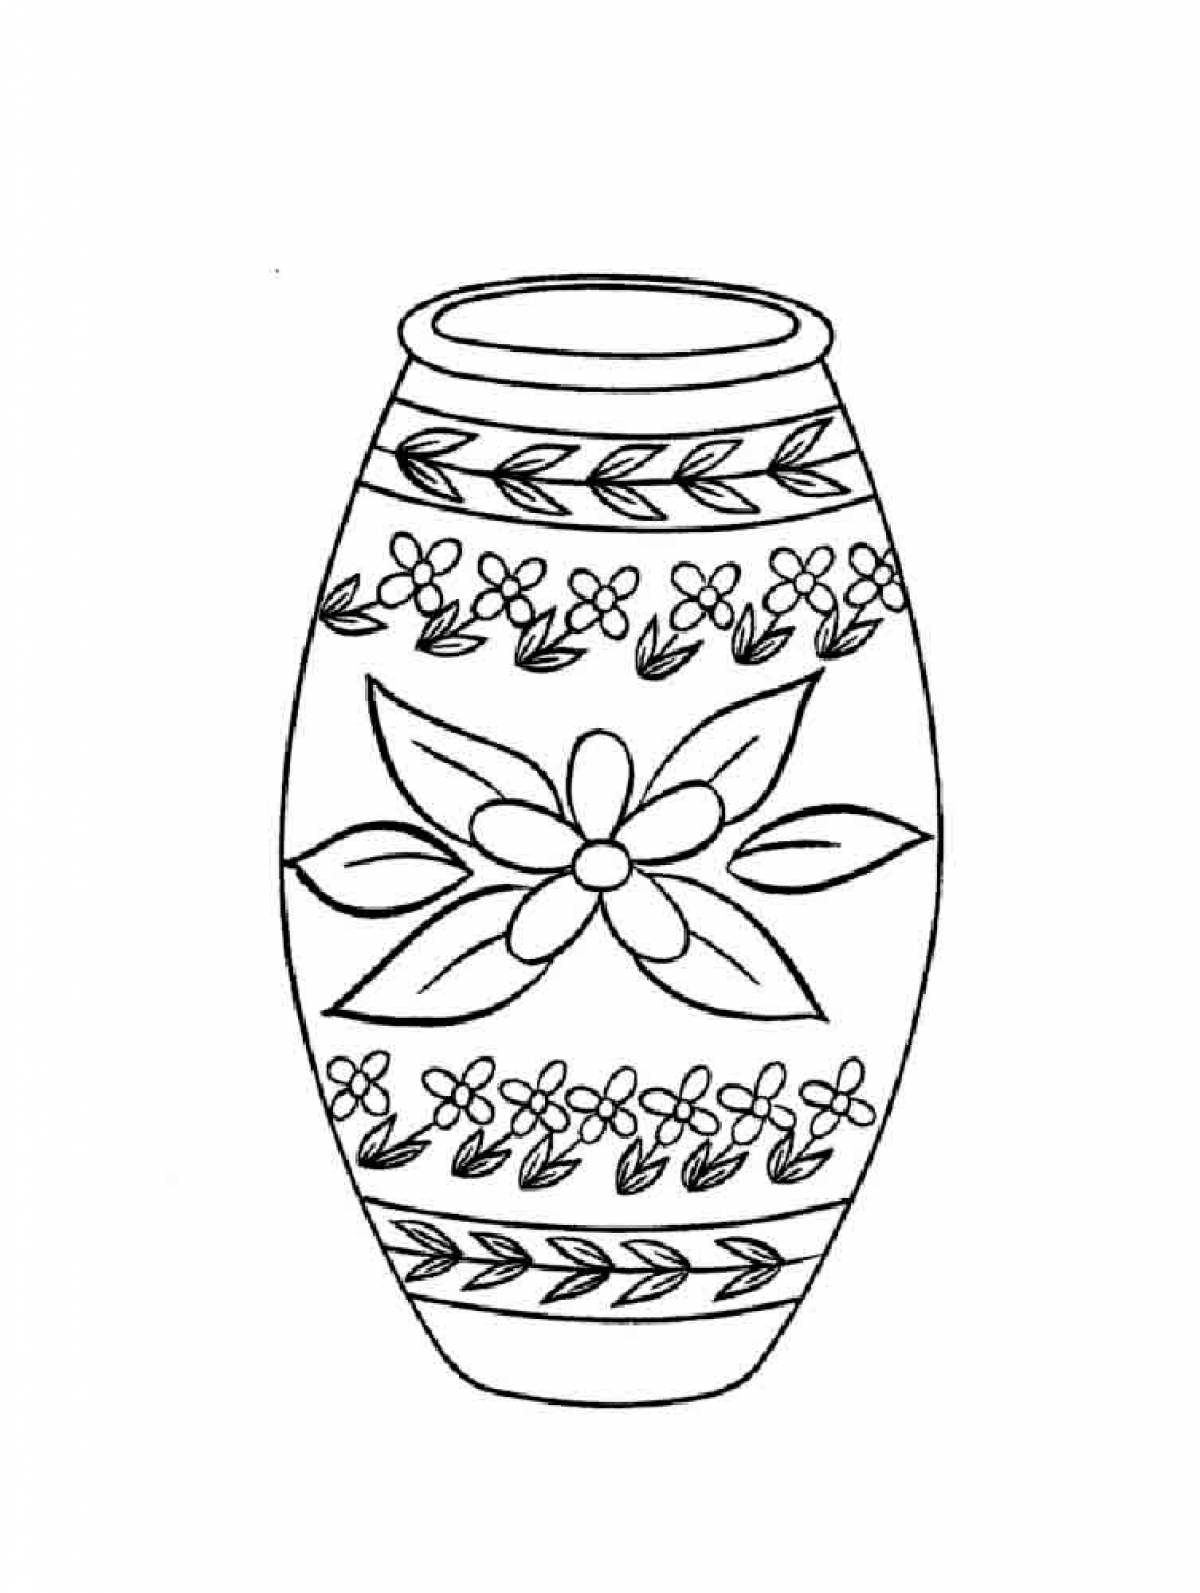 Ваза для вырезания из бумаги распечатать. Раскраска вазы. Орнамент вазы. Рисунок вазы. Ваза с узорами раскраска.